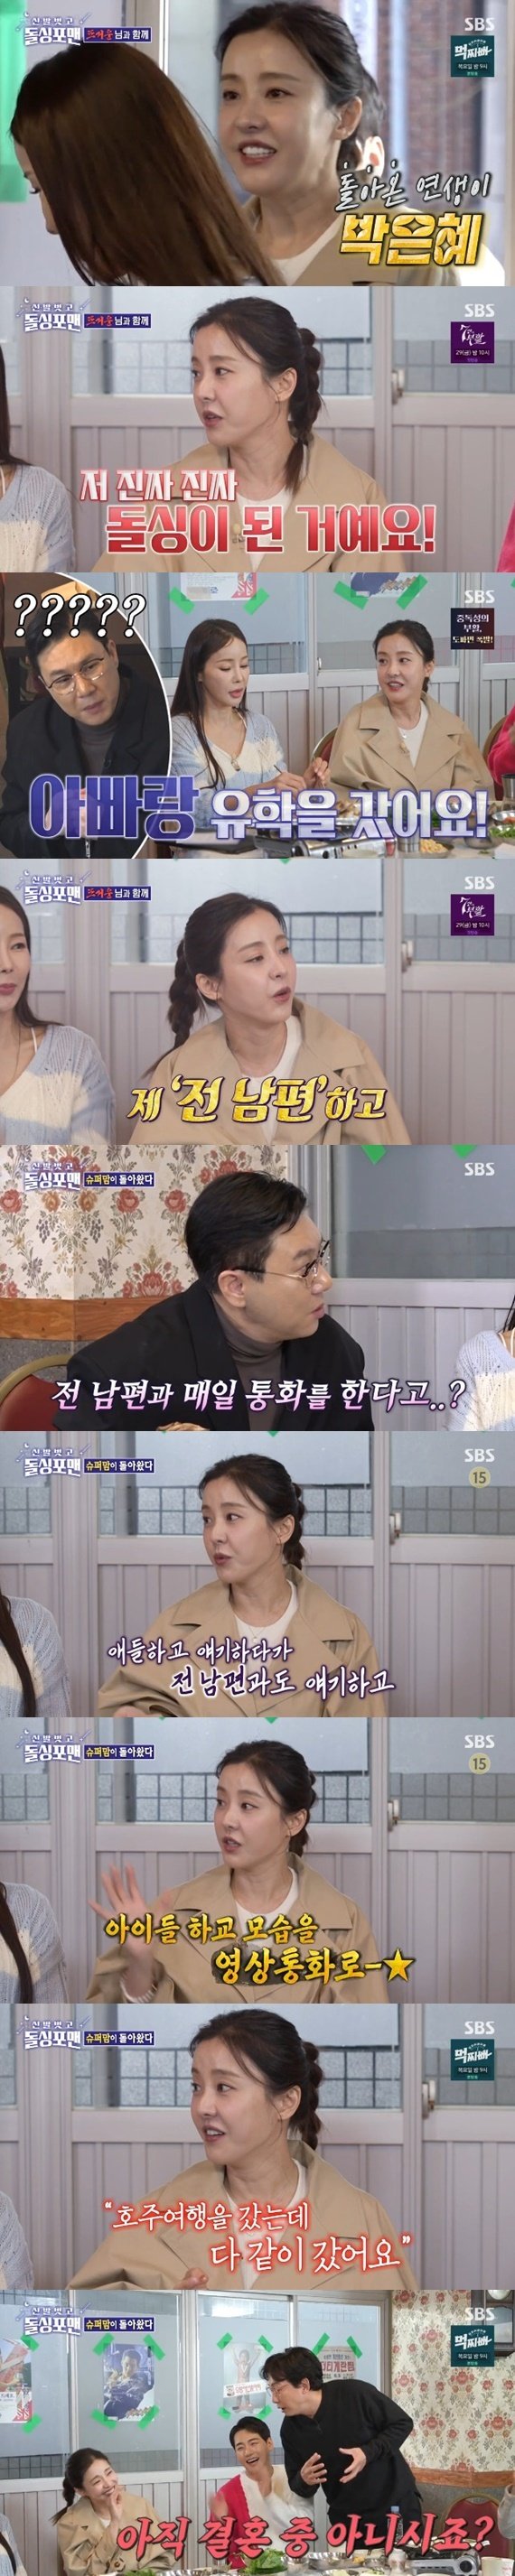 박은혜 전남편과 이혼 후 같이 가족 여행…매일 통화 고백 [RE:TV]